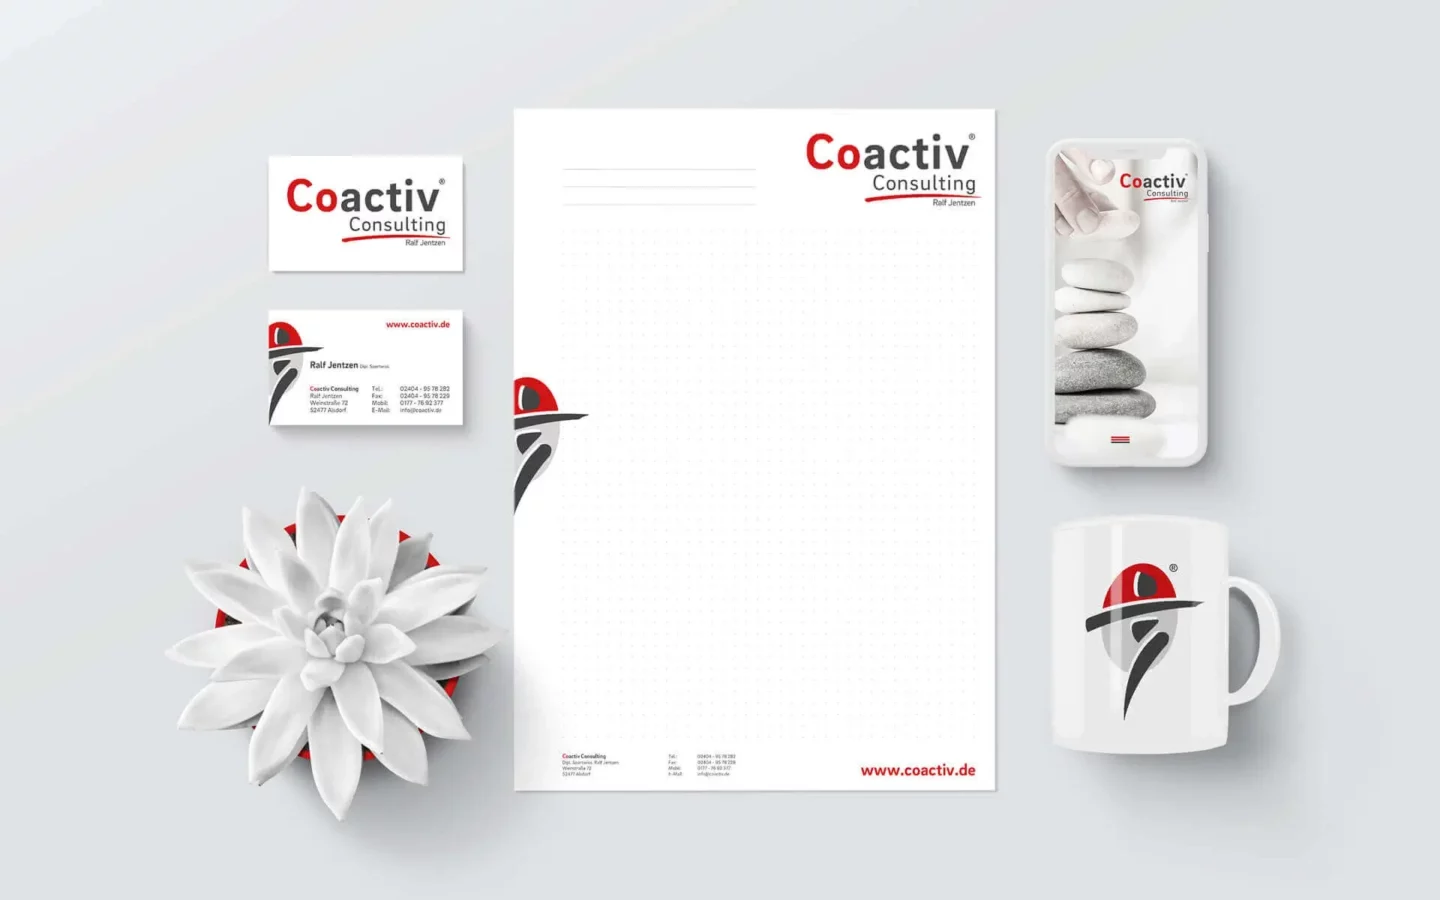 Visuelles Erscheinungsbild Coactiv Consulting mit Logodesign